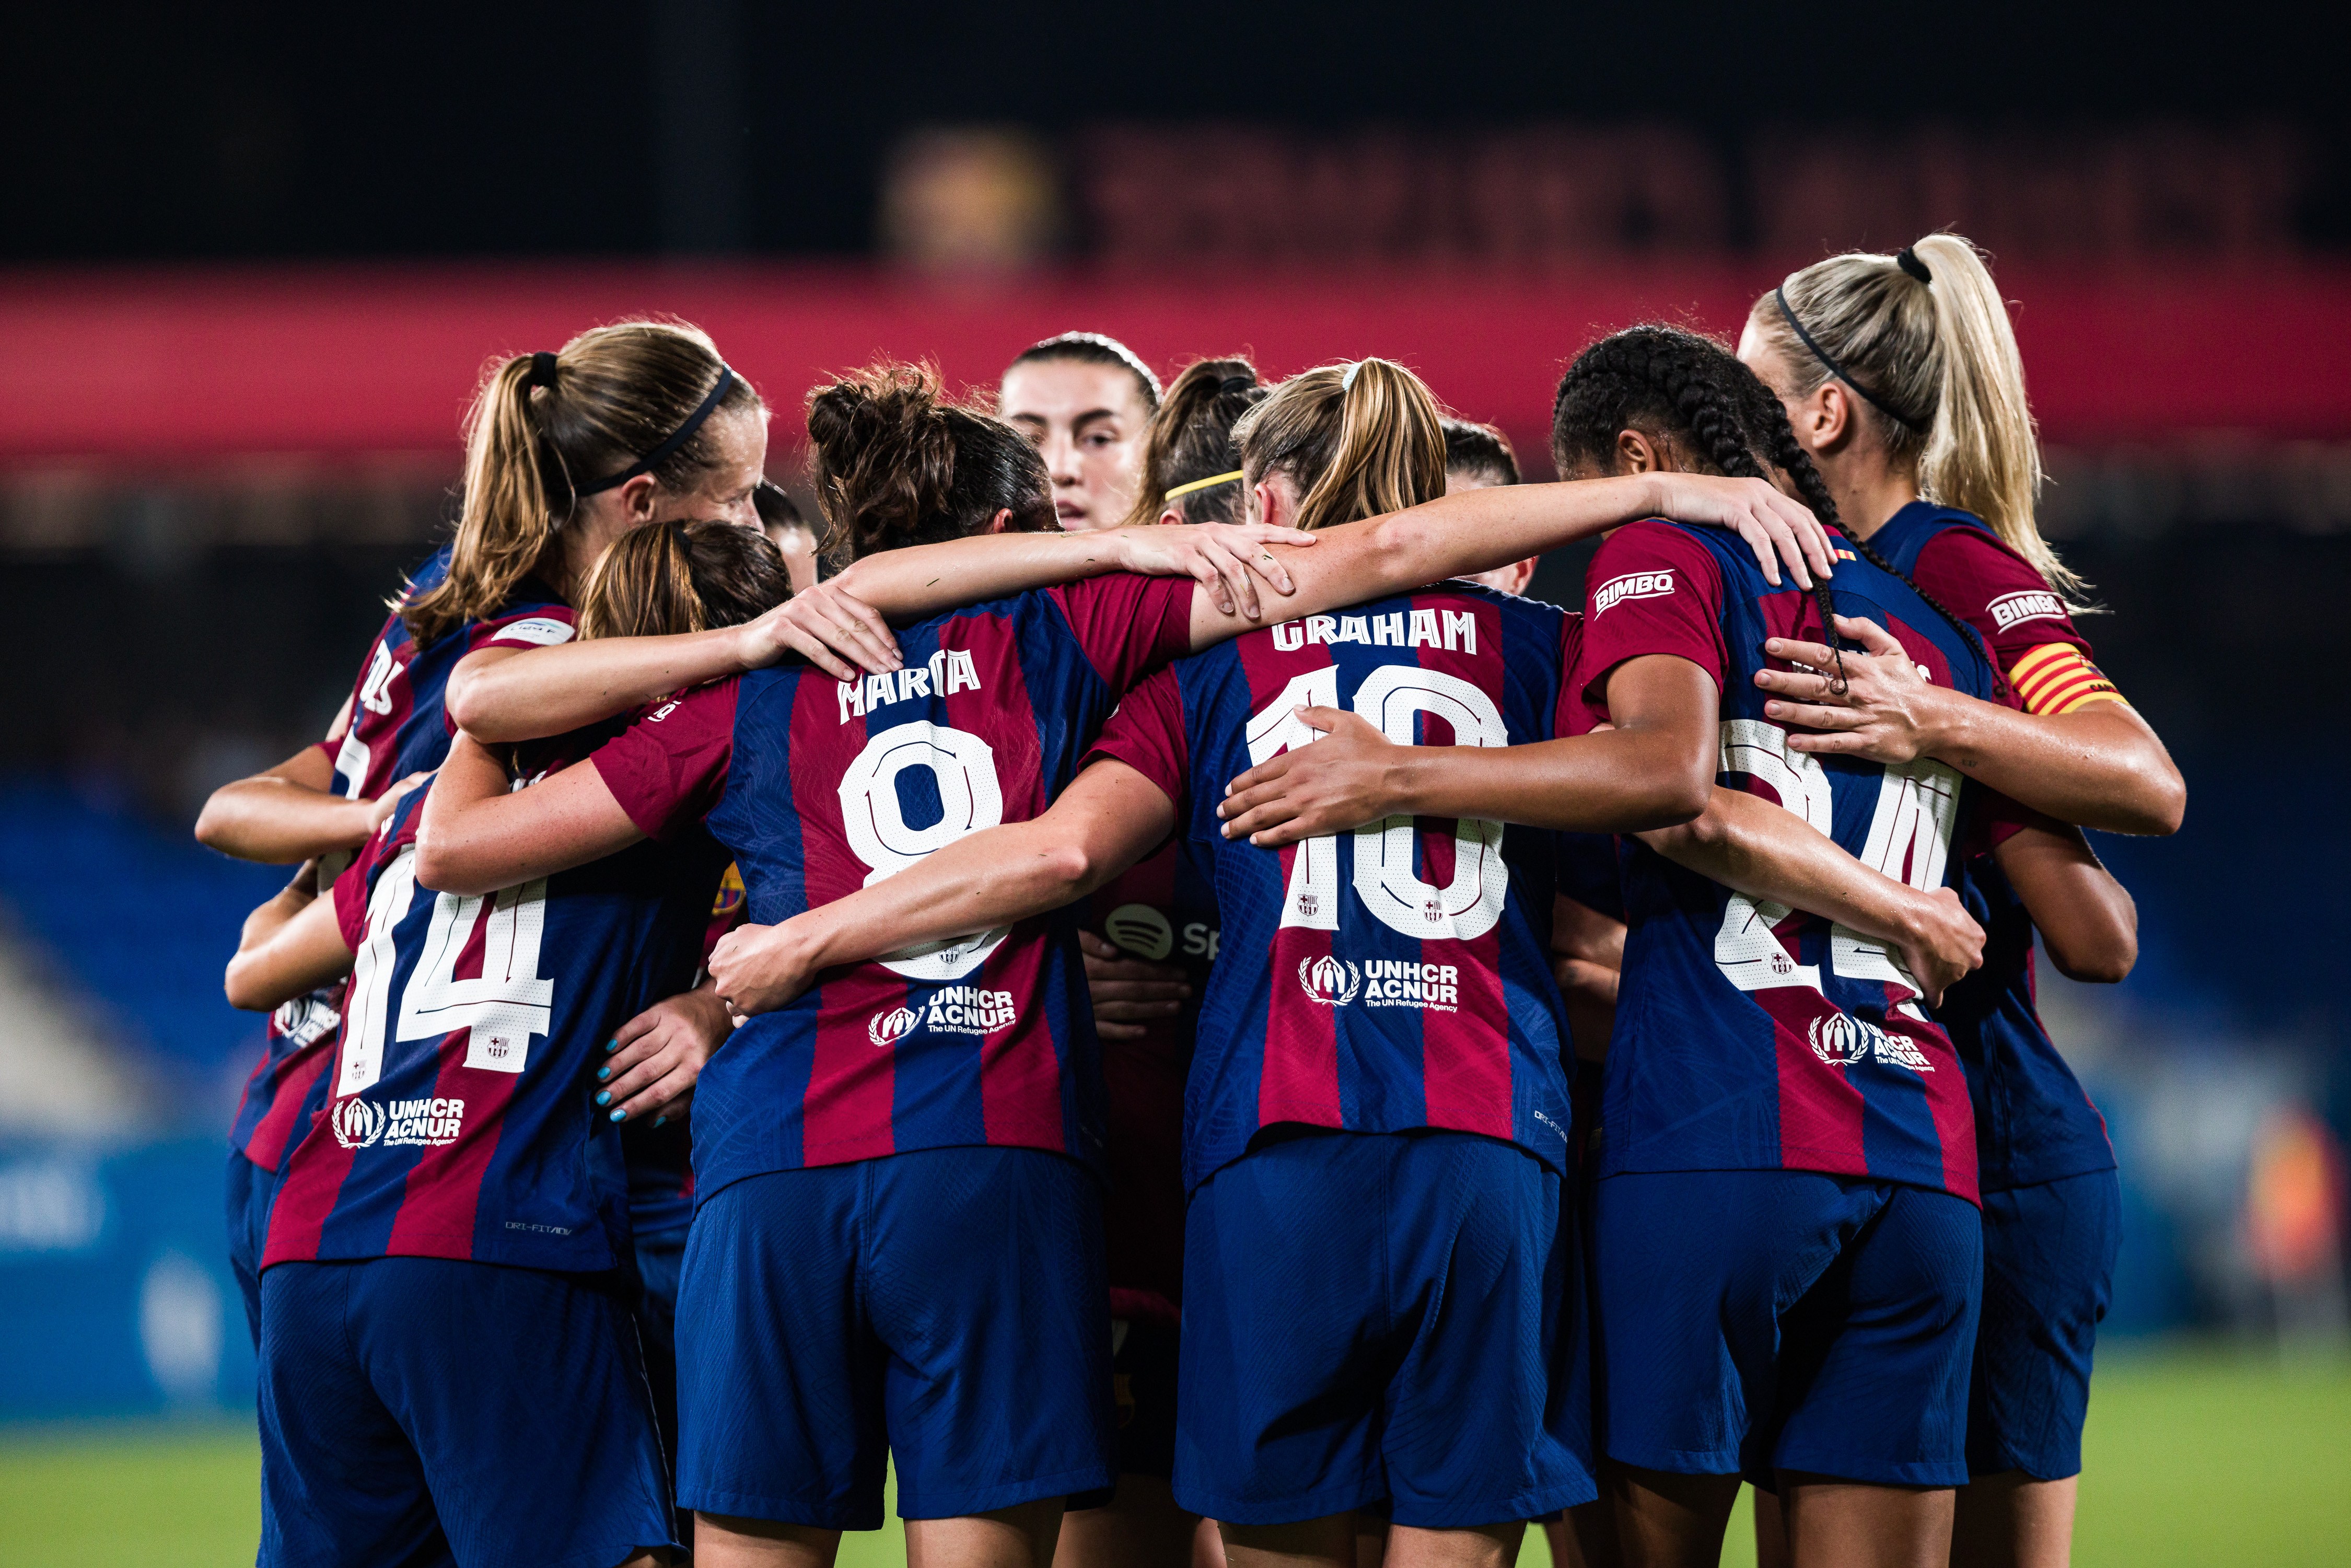 El Barça femení buscarà plantar la bandera al cim de Montjuïc